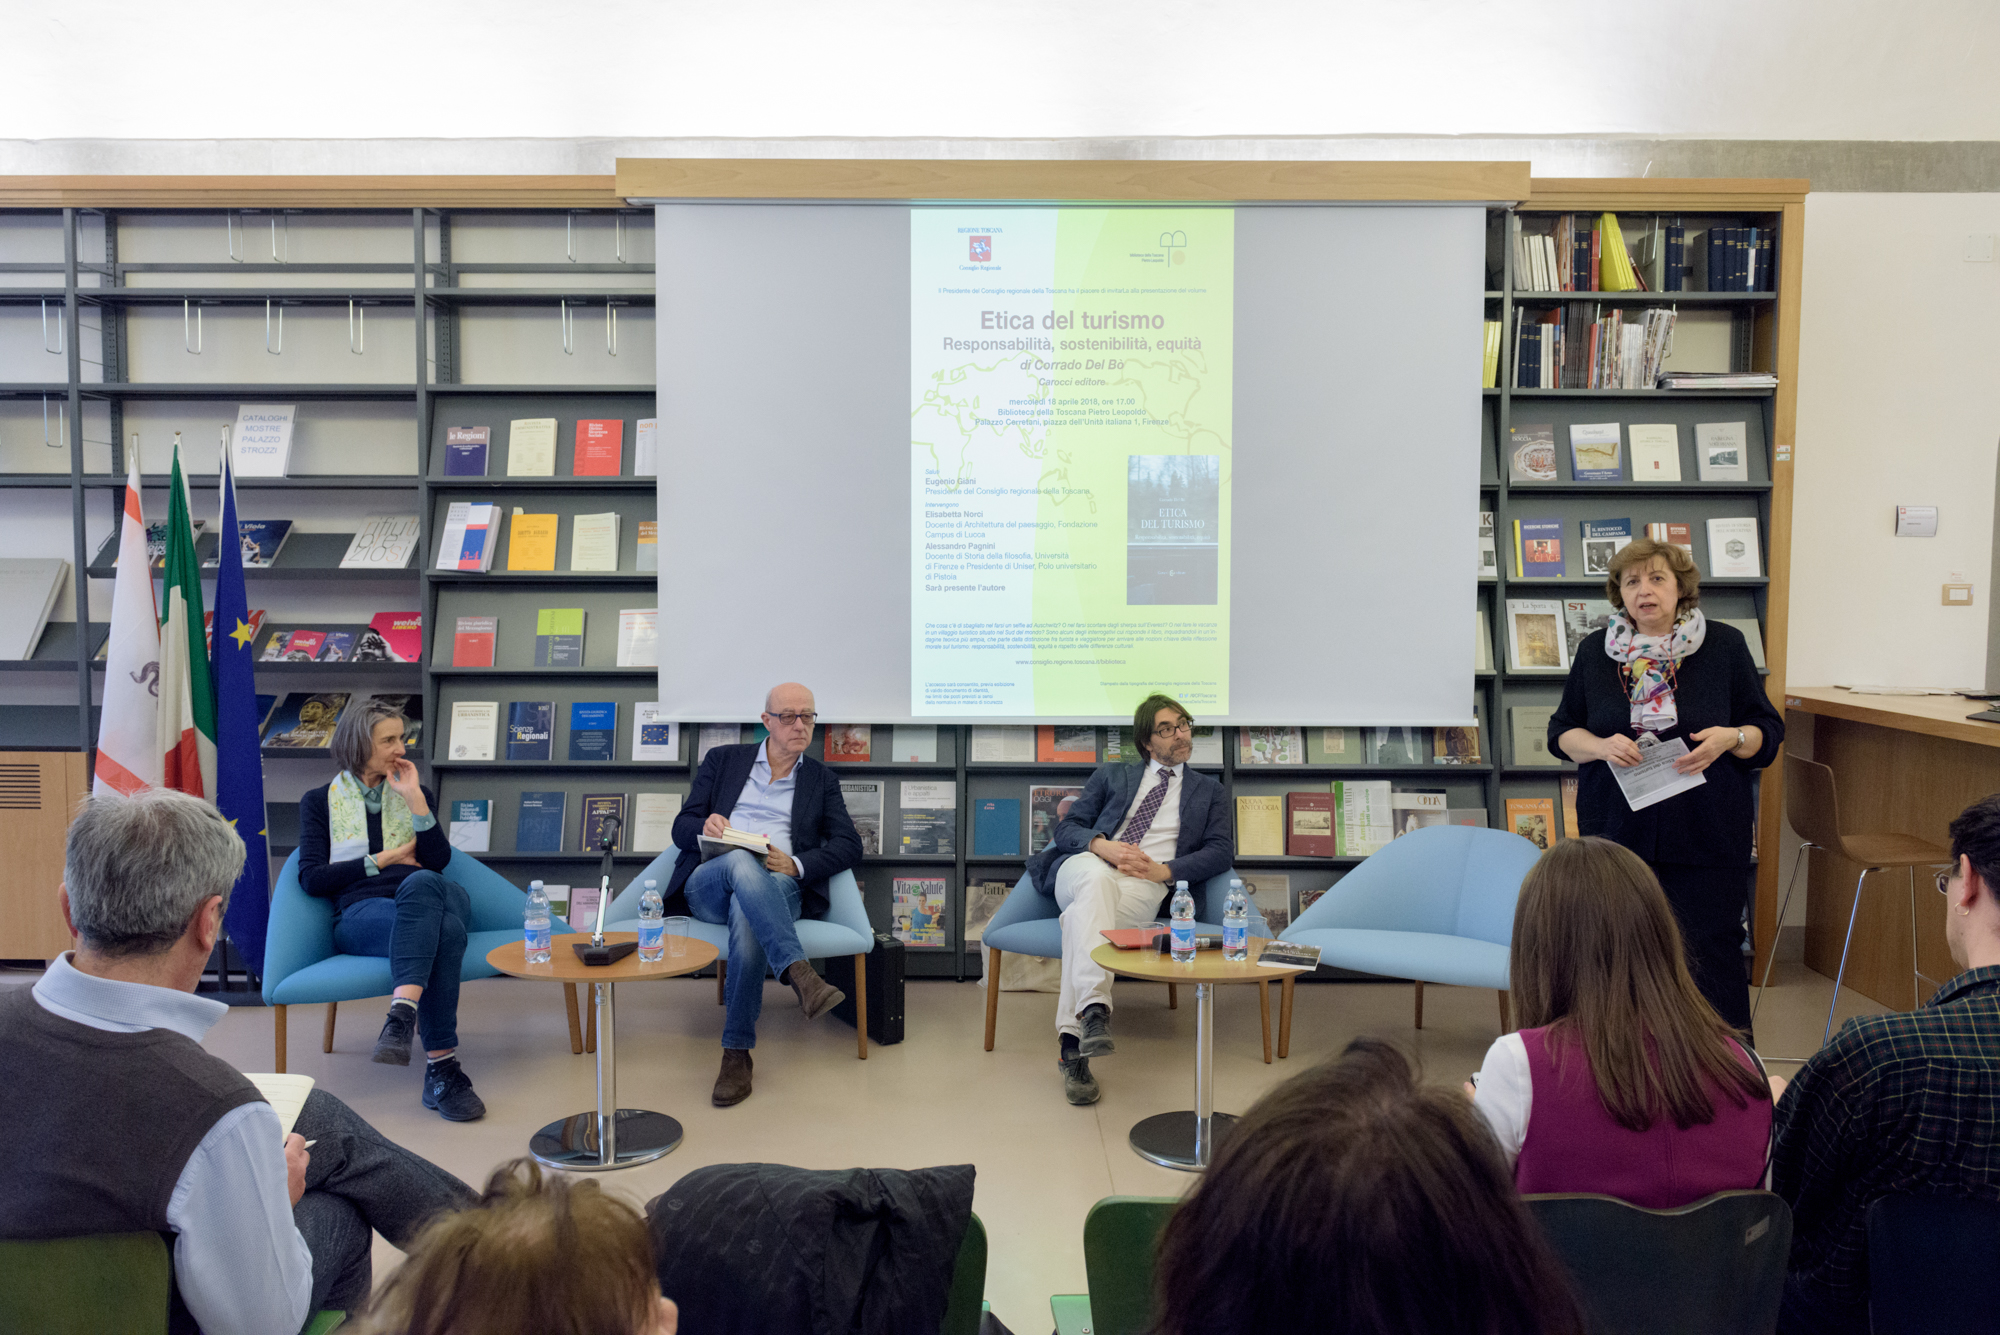 Da sinistra Elisabetta Norci, Alessandro Pagnini, Corrado Del Bò e Chiaretta Silla